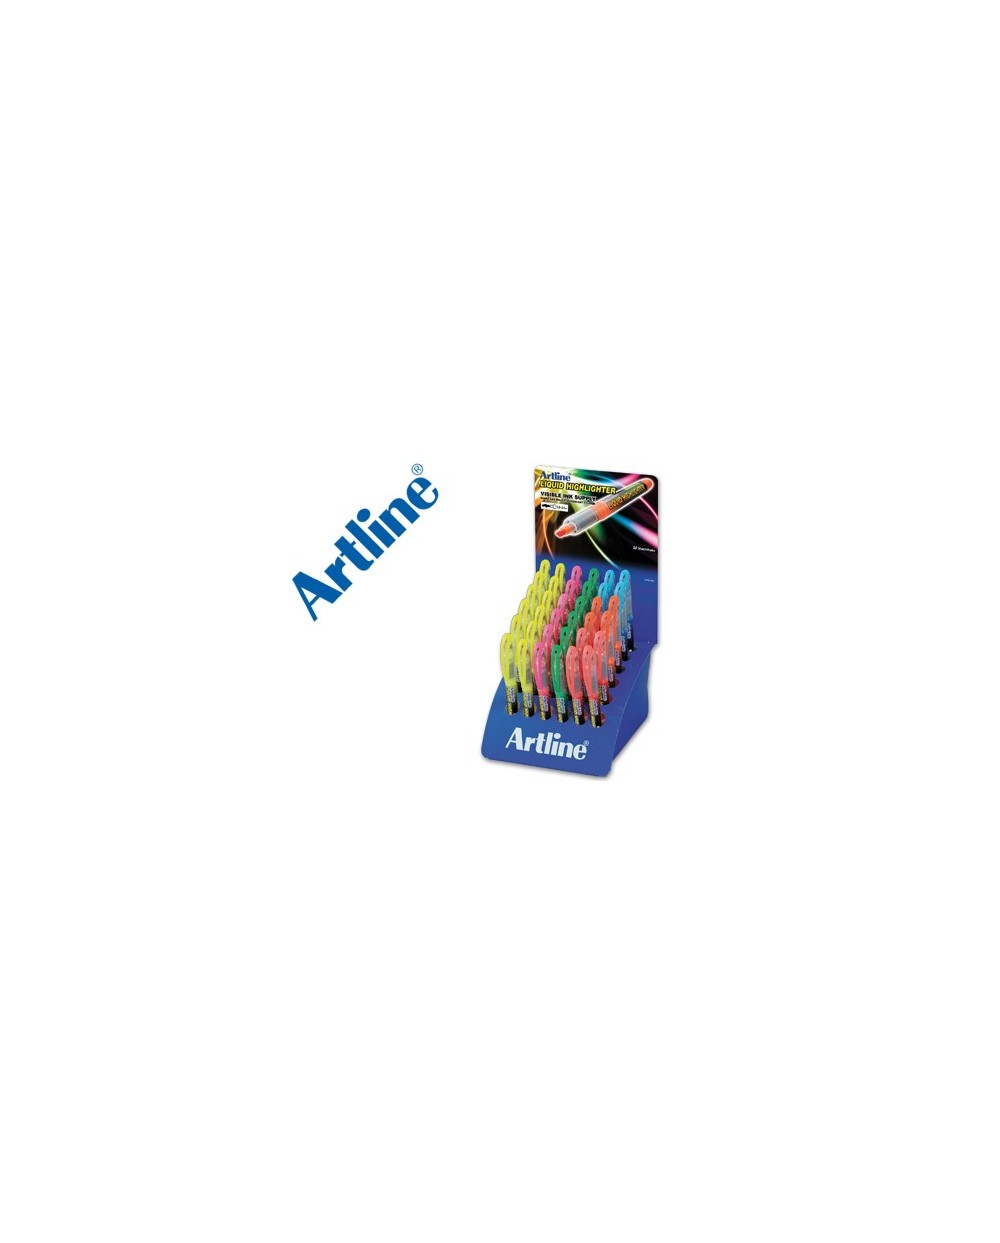 Rotulador artline fluorescente ek 640 punta biselada expositor de 36 unidades